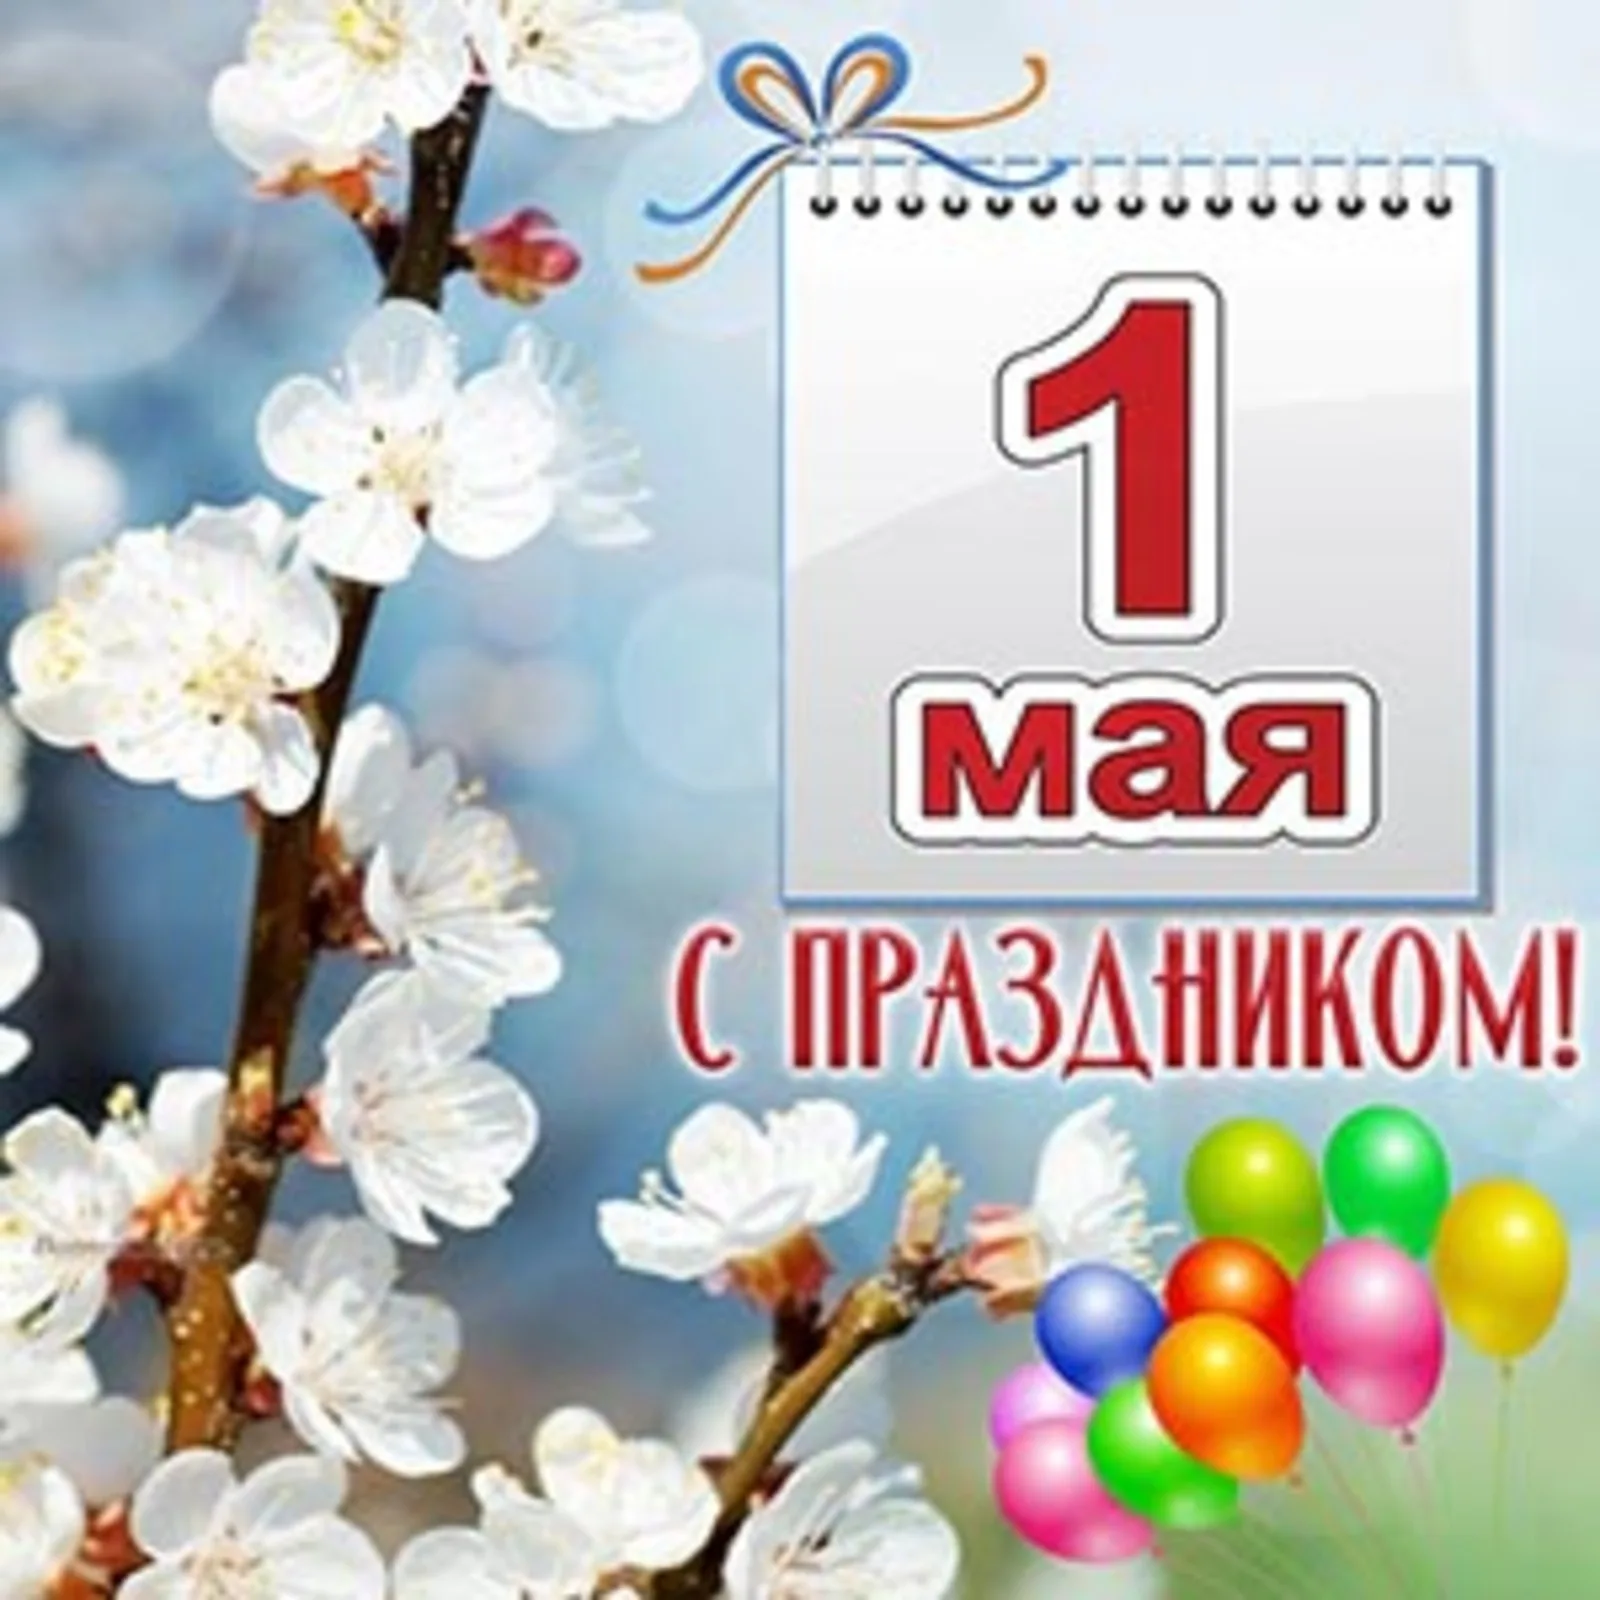 1 мая праздник мир. 1 Мая праздник. 1 Мая праздник весны и труда. Поздравление с 1 мая. Открытка 1 мая праздник весны и труда.